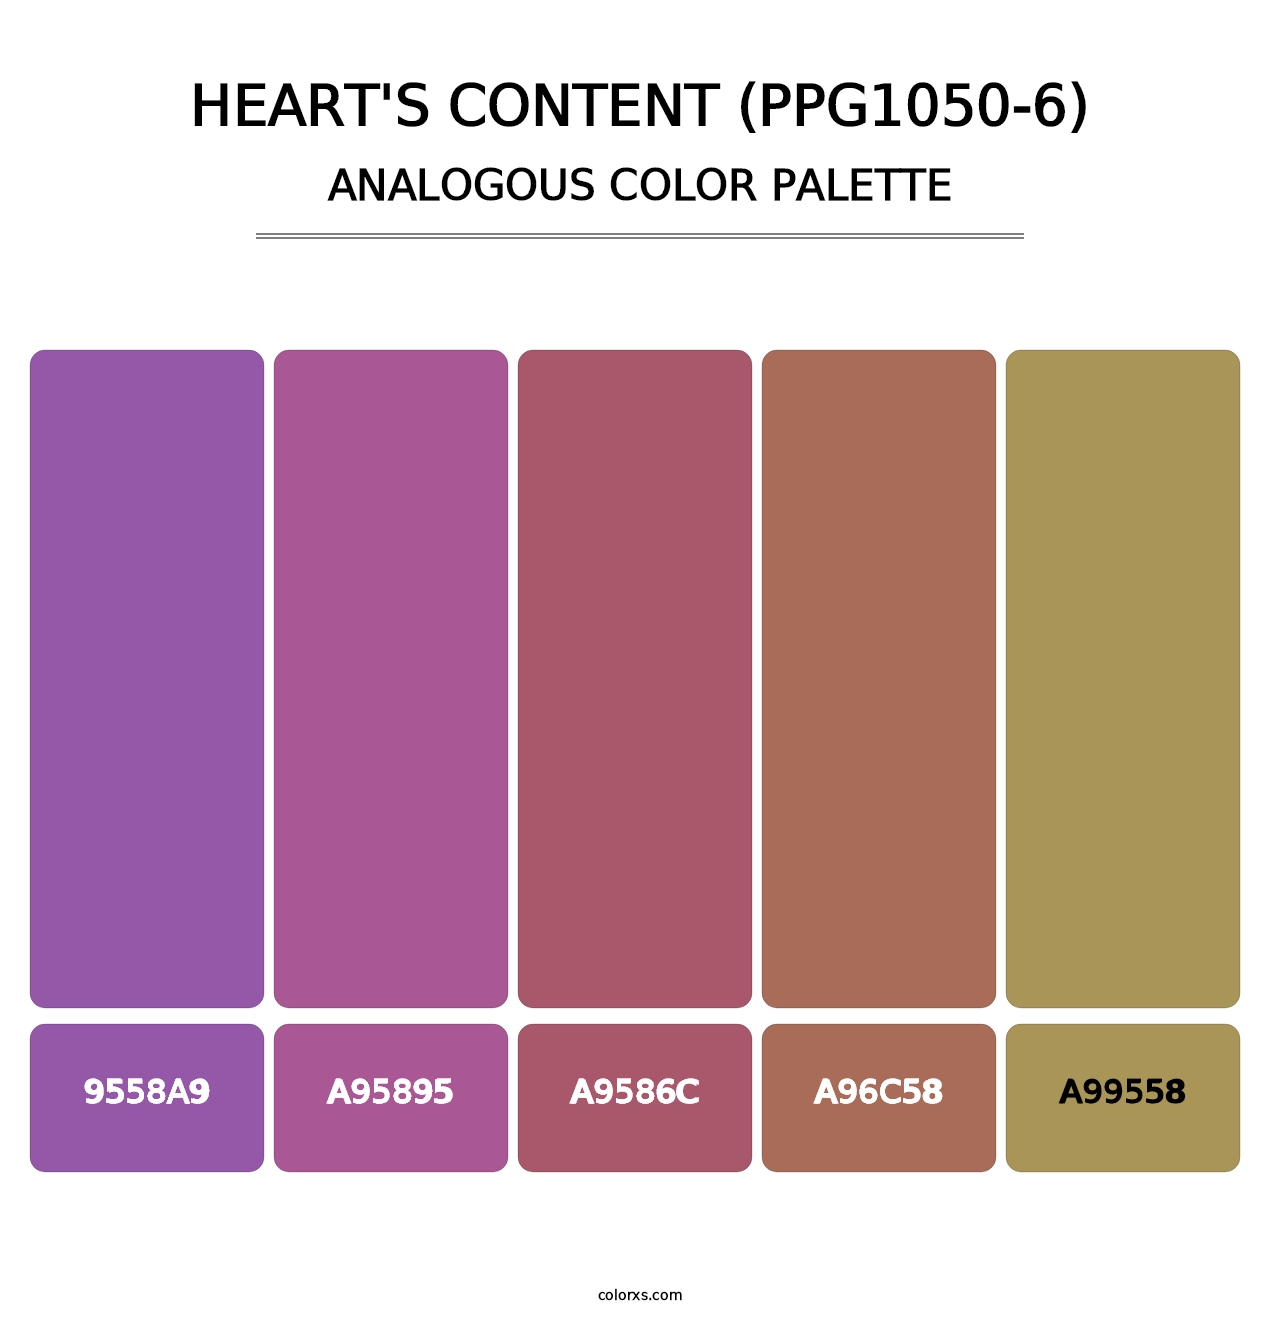 Heart's Content (PPG1050-6) - Analogous Color Palette